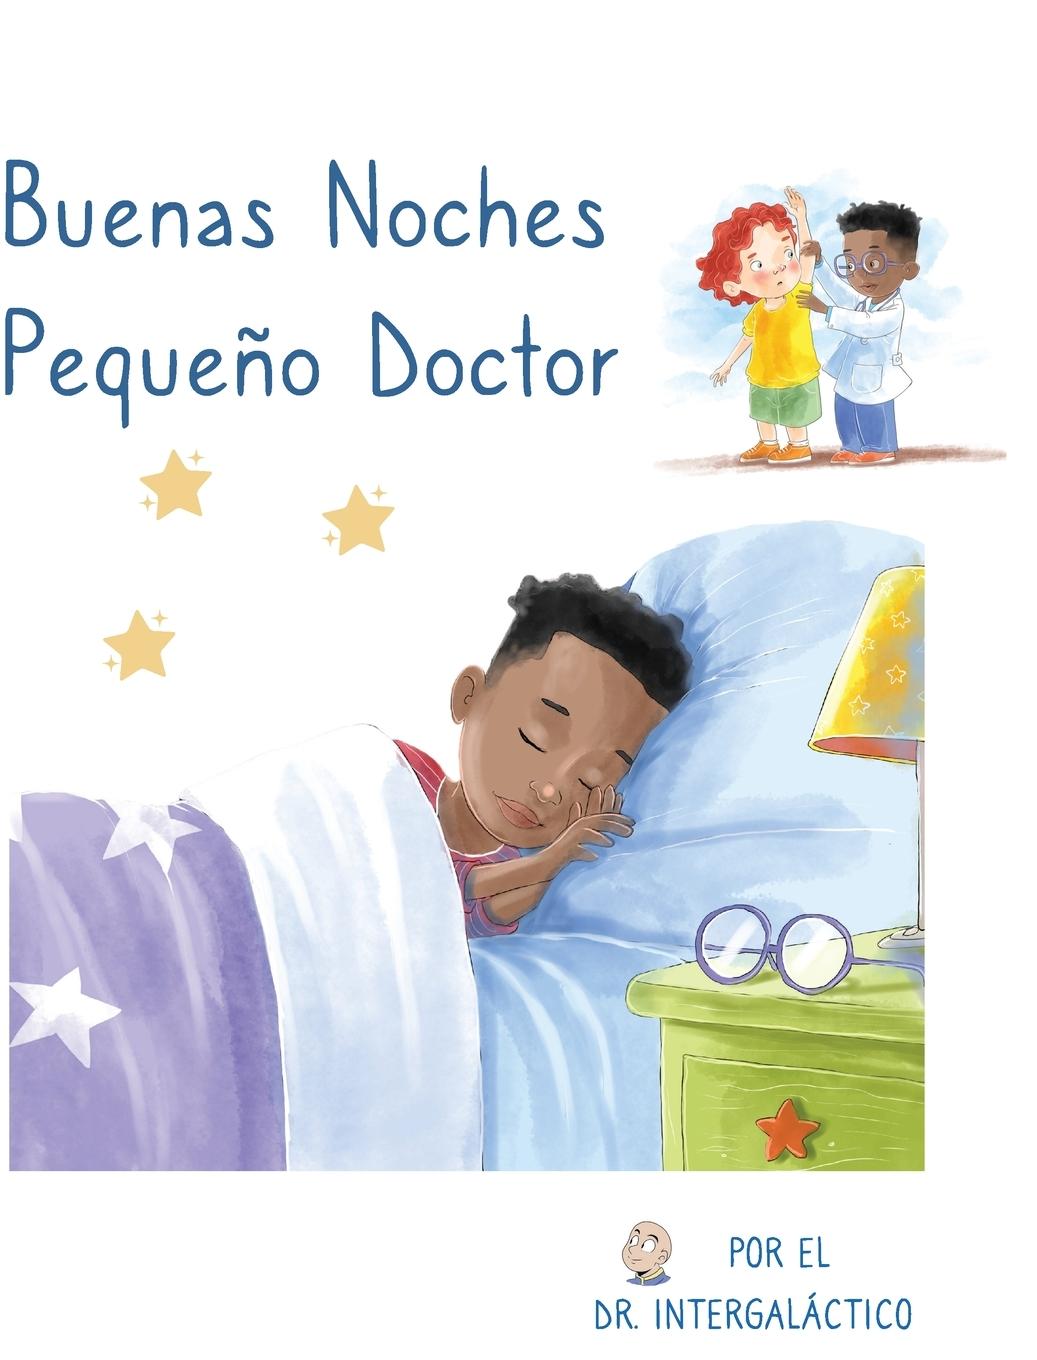 Kniha Buenas Noches Pequeno Doctor Jose Morey